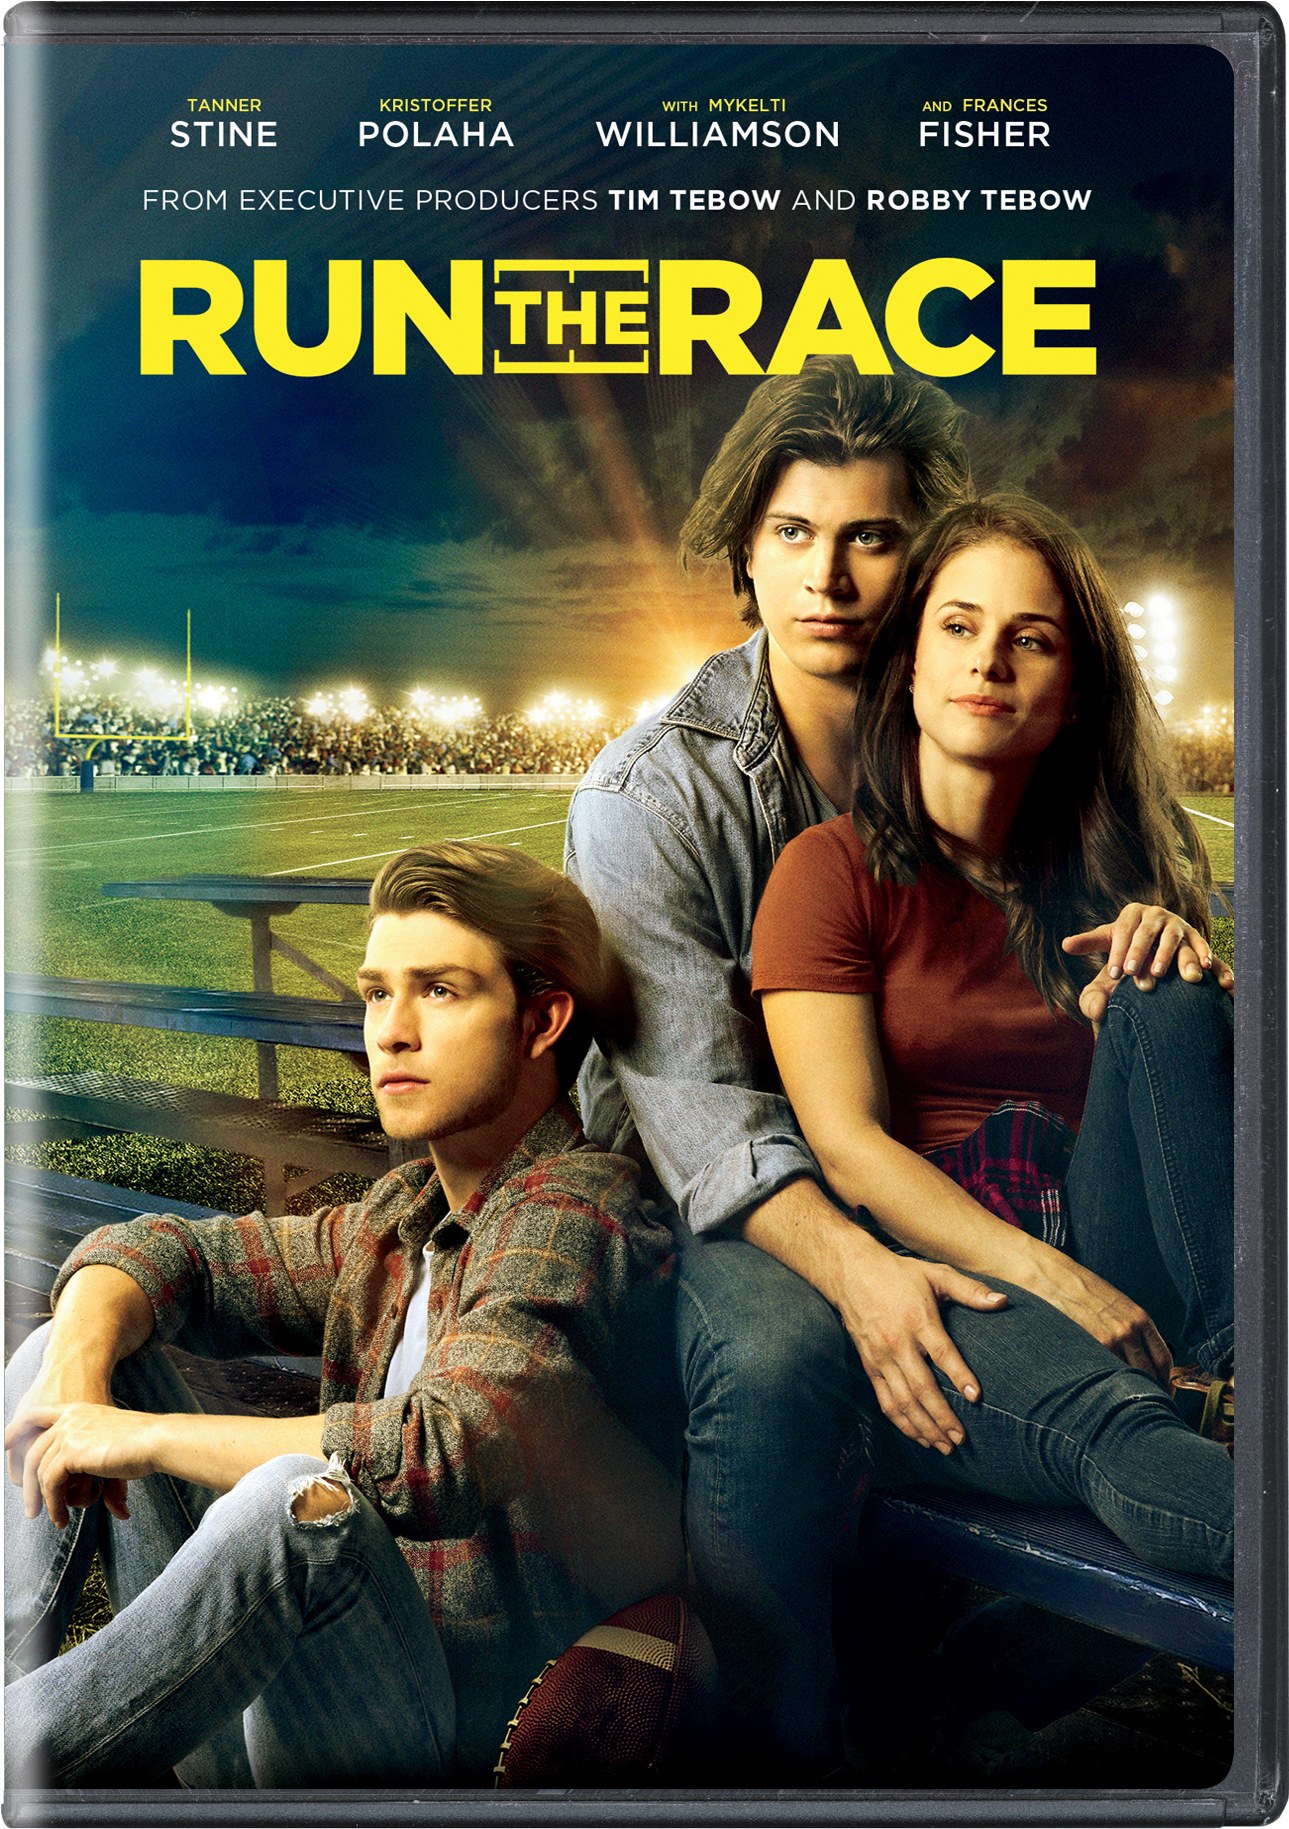 Run The Race - DVD [ 2019 ]  - Drama Movies On DVD - Movies On GRUV